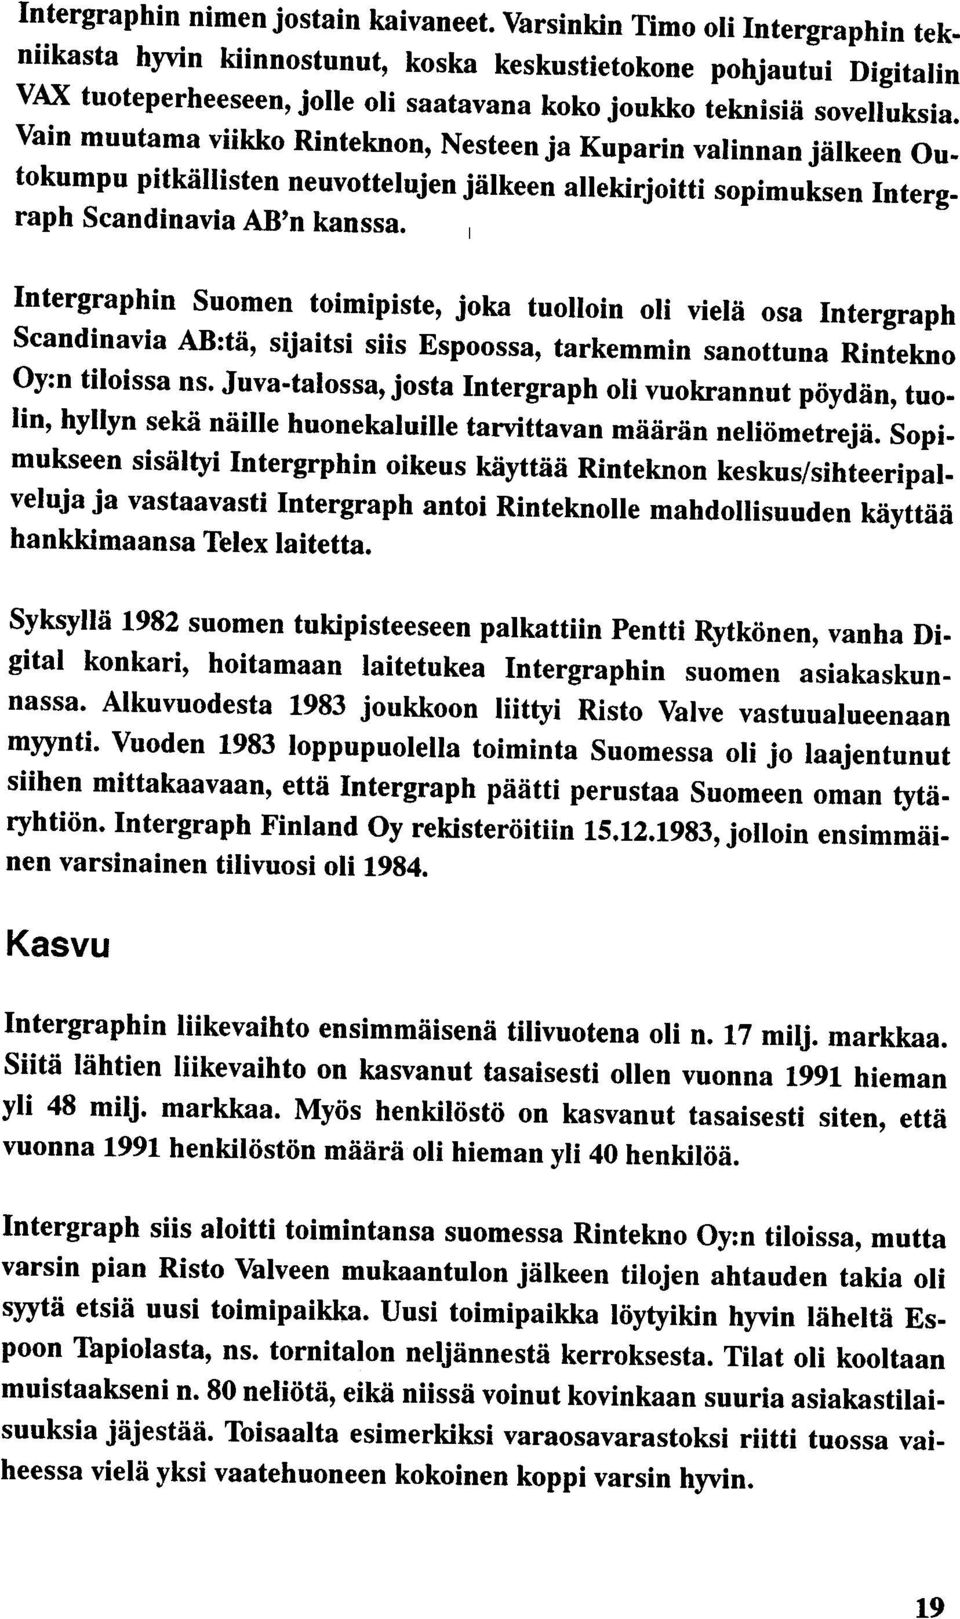 Vain muutama viikko Rinteknon, Nesteen ja Kuparin valinnan jälkeen Outokumpu pitkällisten neuvottelujen jälkeen allekirjoitti sopimuksen Intergraph Scandinavia AB'n kanssa.